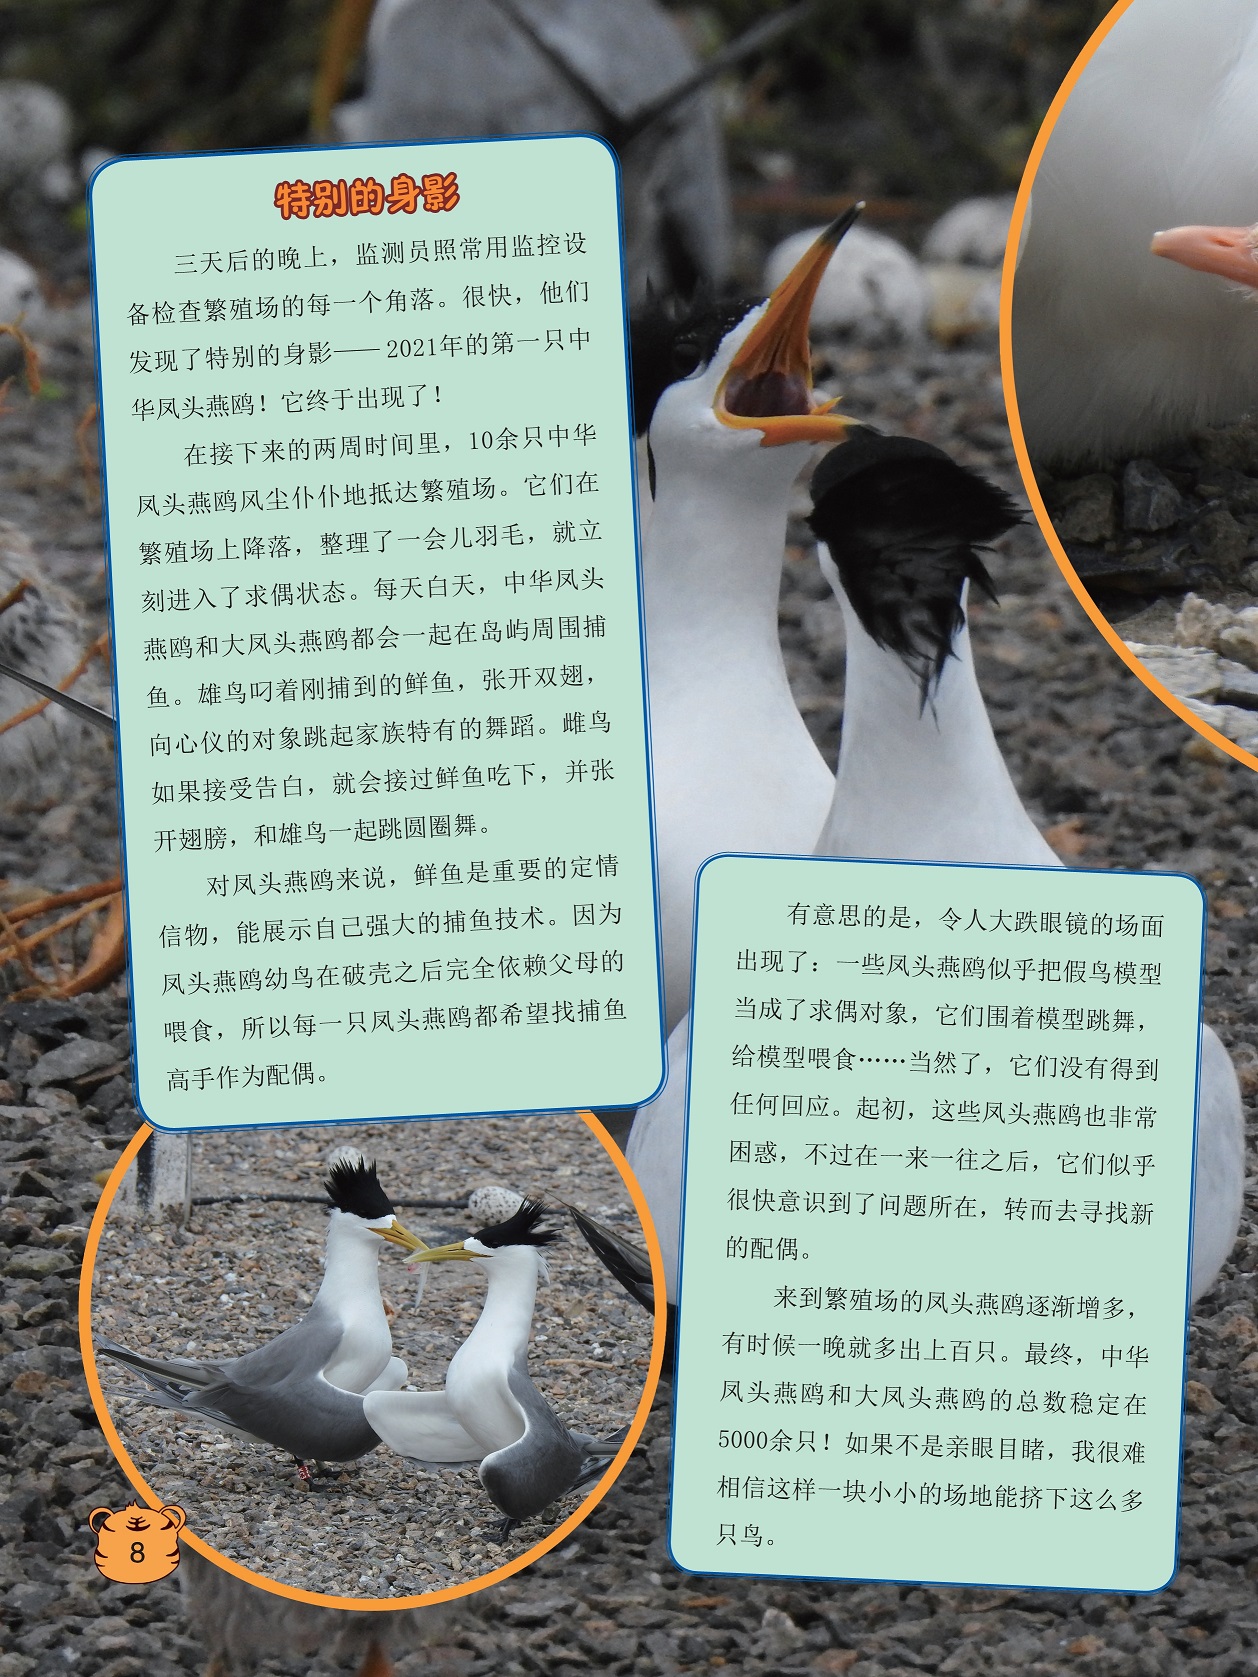 监测员检查繁殖场的每一个角落,对凤头燕鸥来说鲜鱼是重要的定情信物